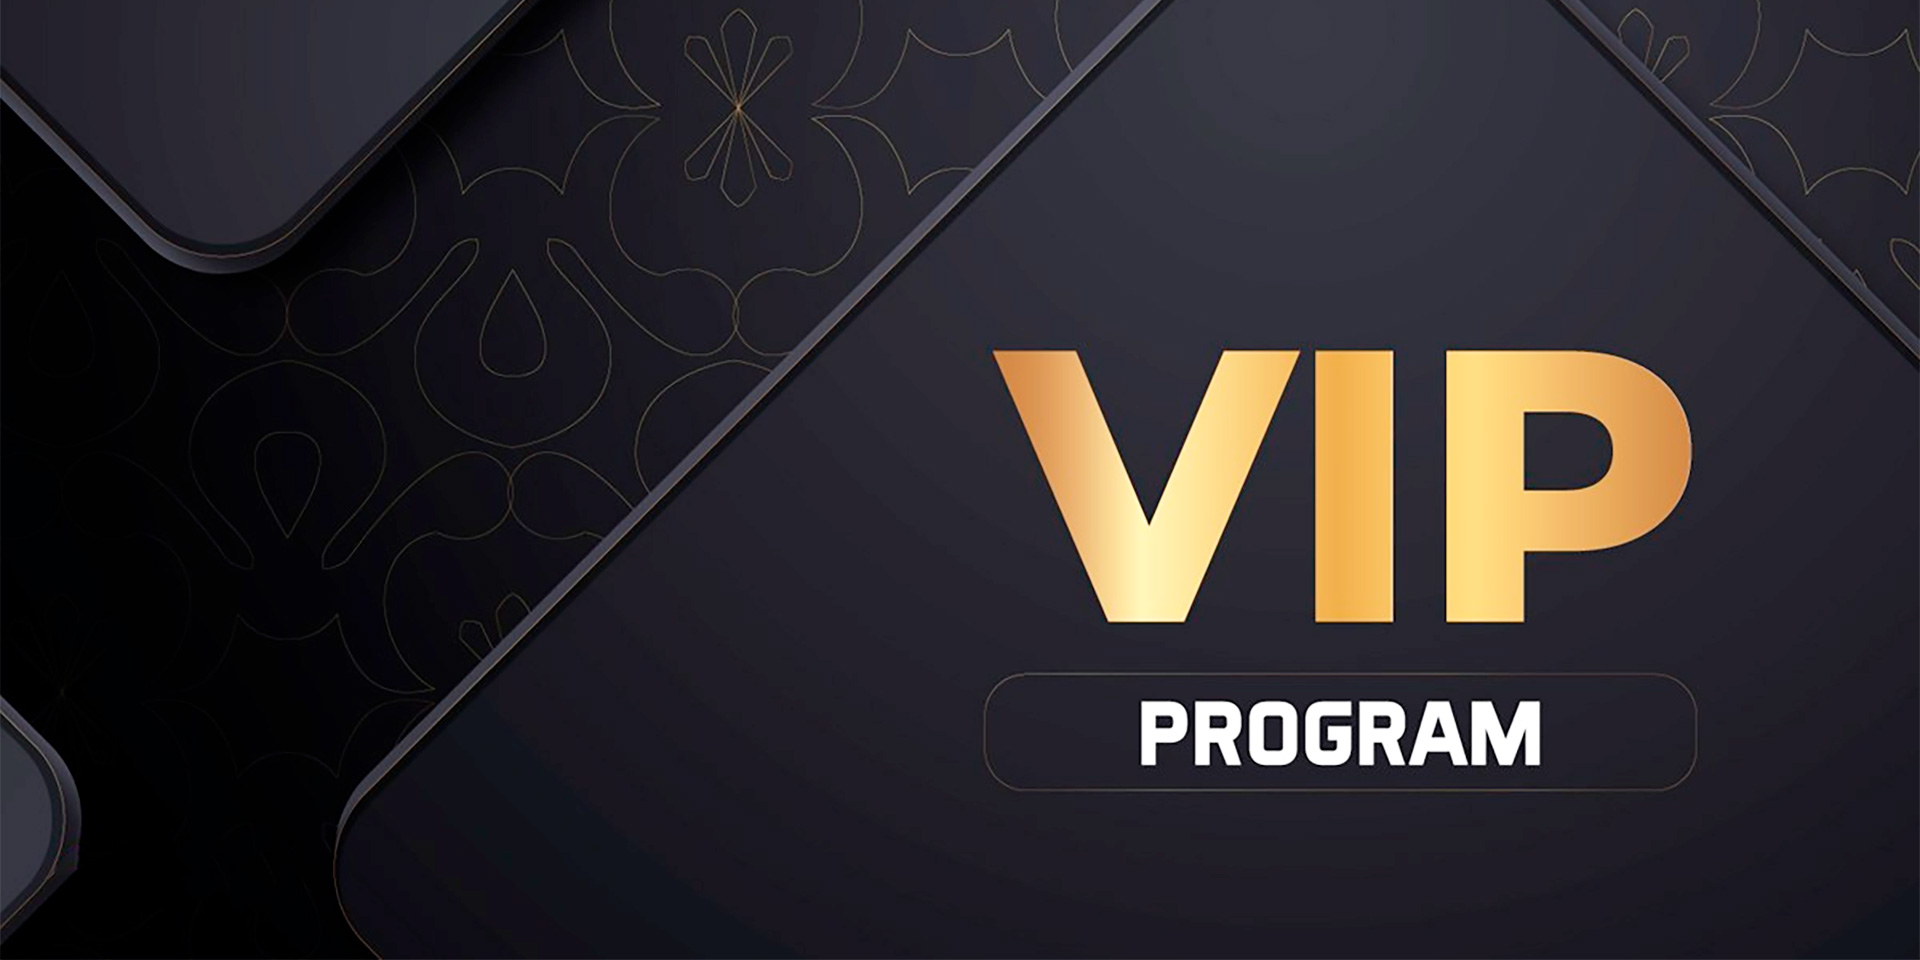 VIP Programs in Live Casino